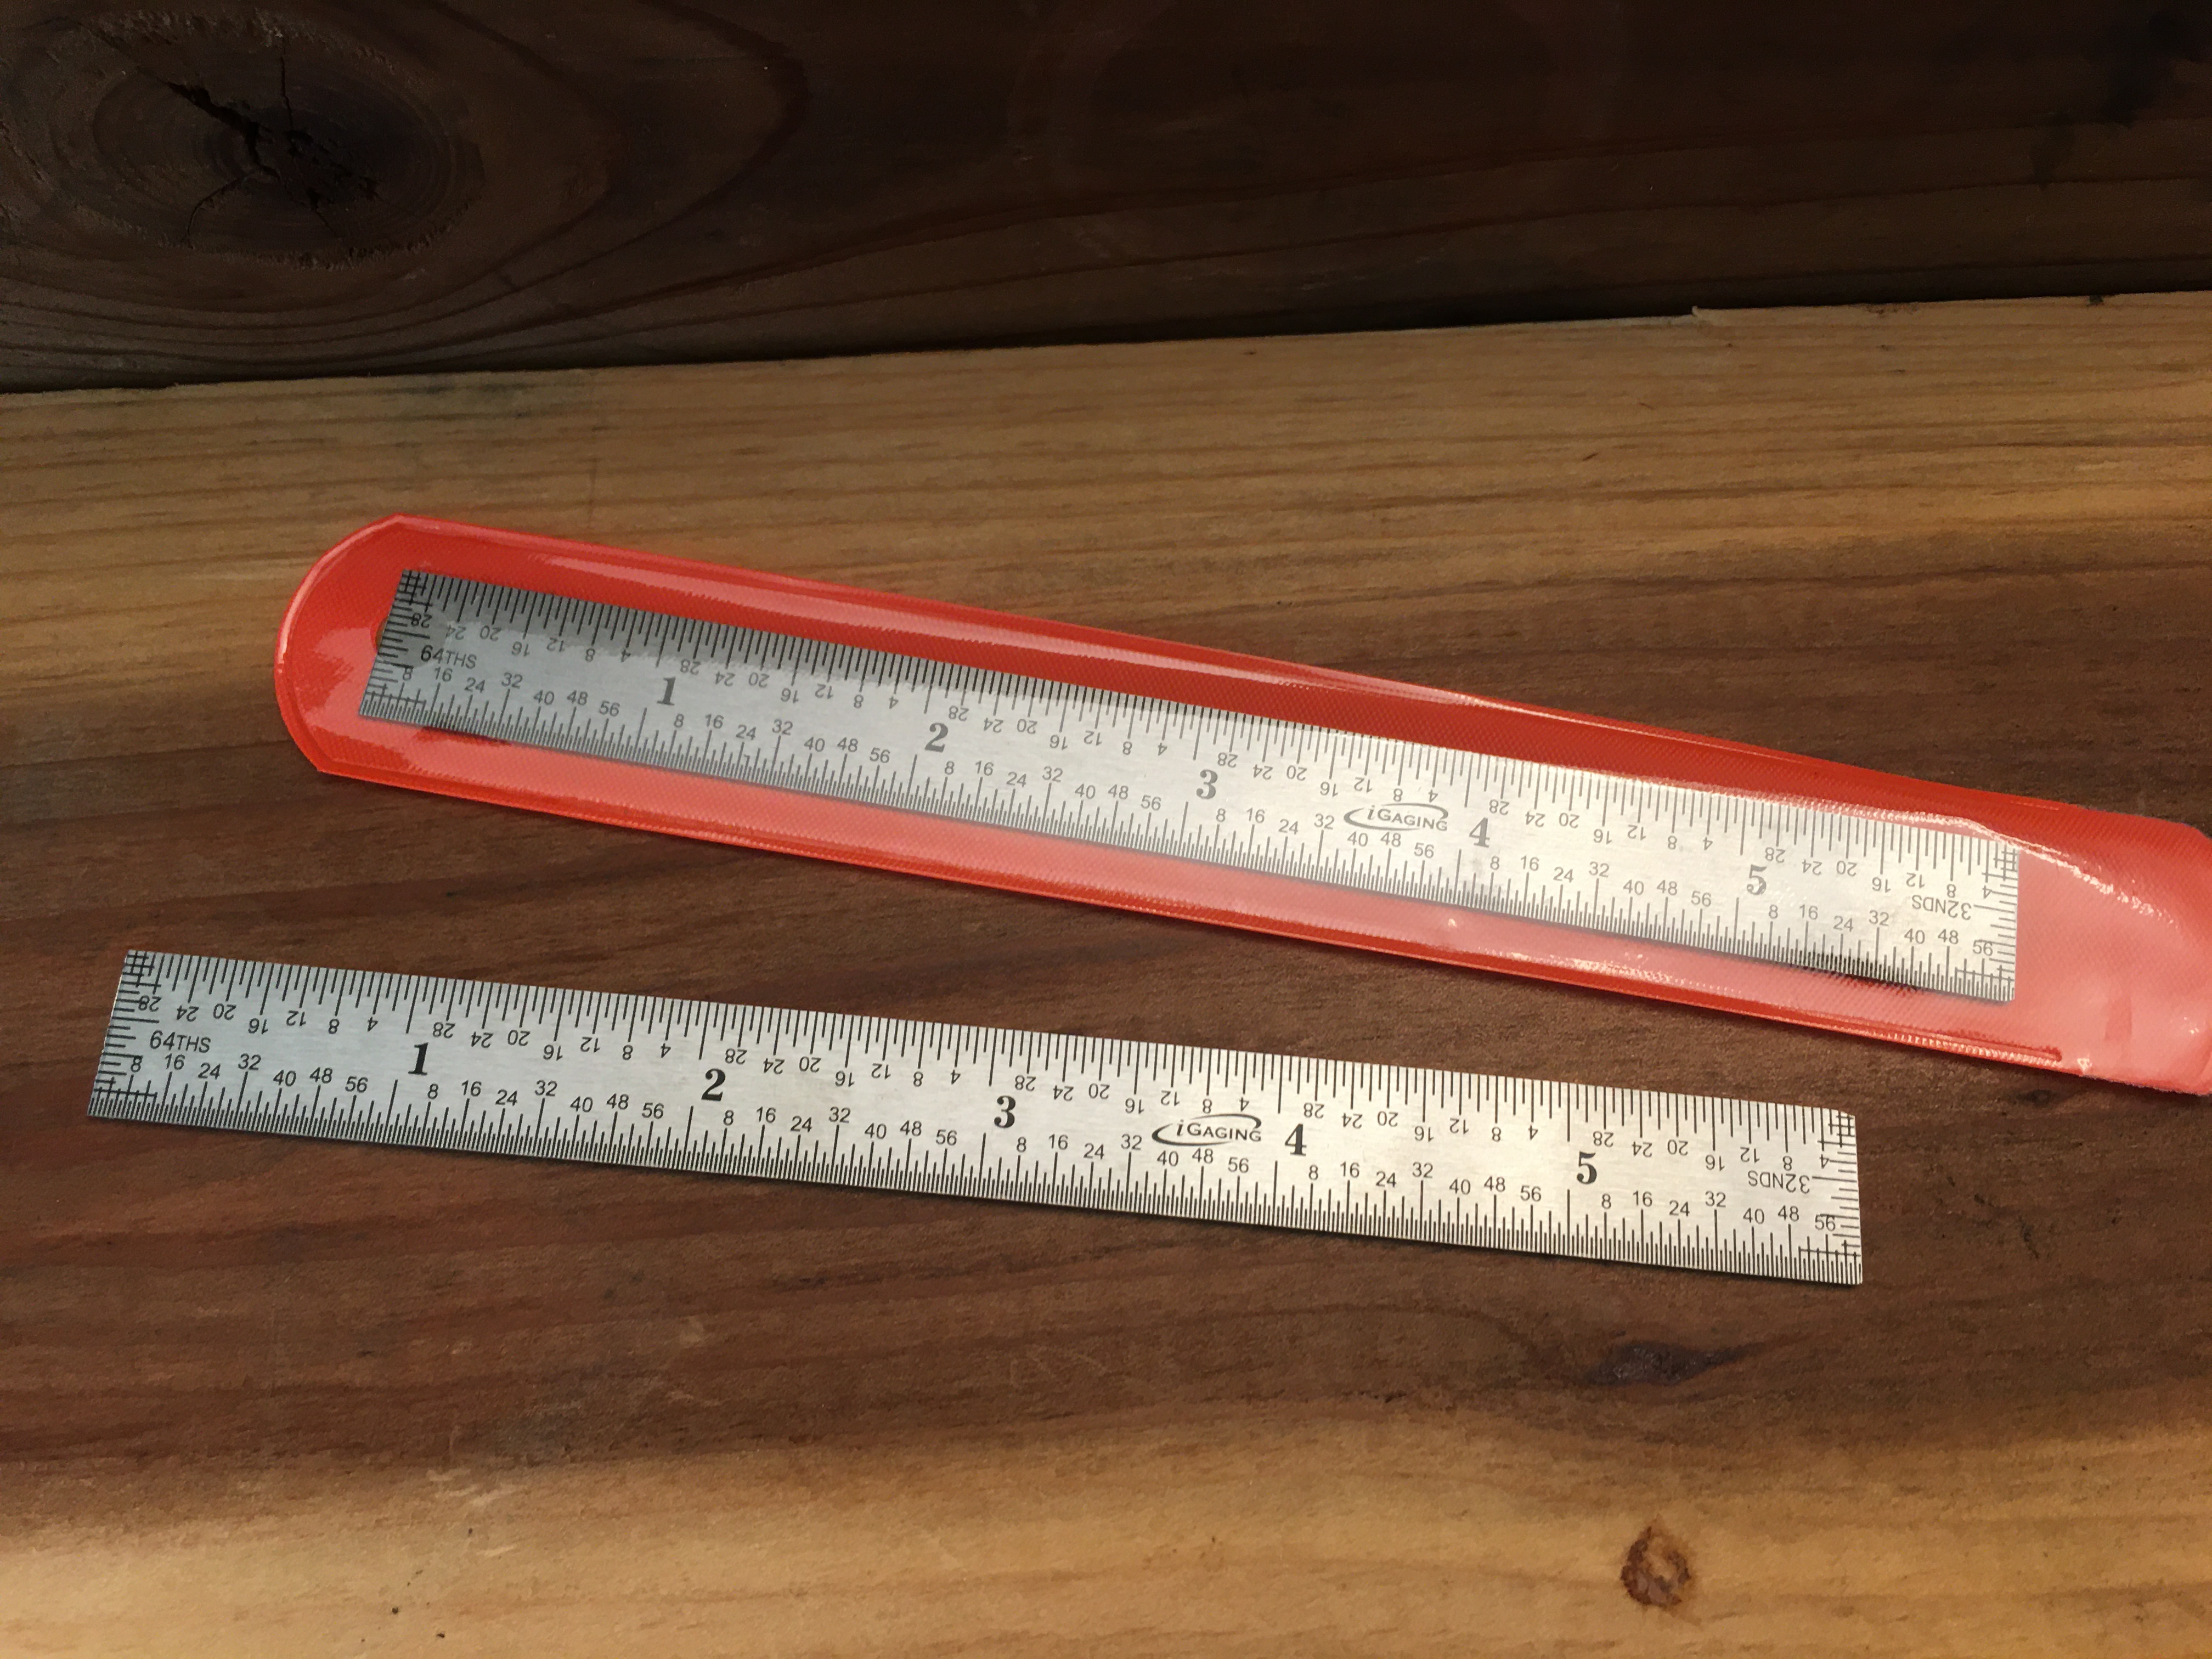 Standard Stainless Steel Pocket Ruler (Slight corner defect)